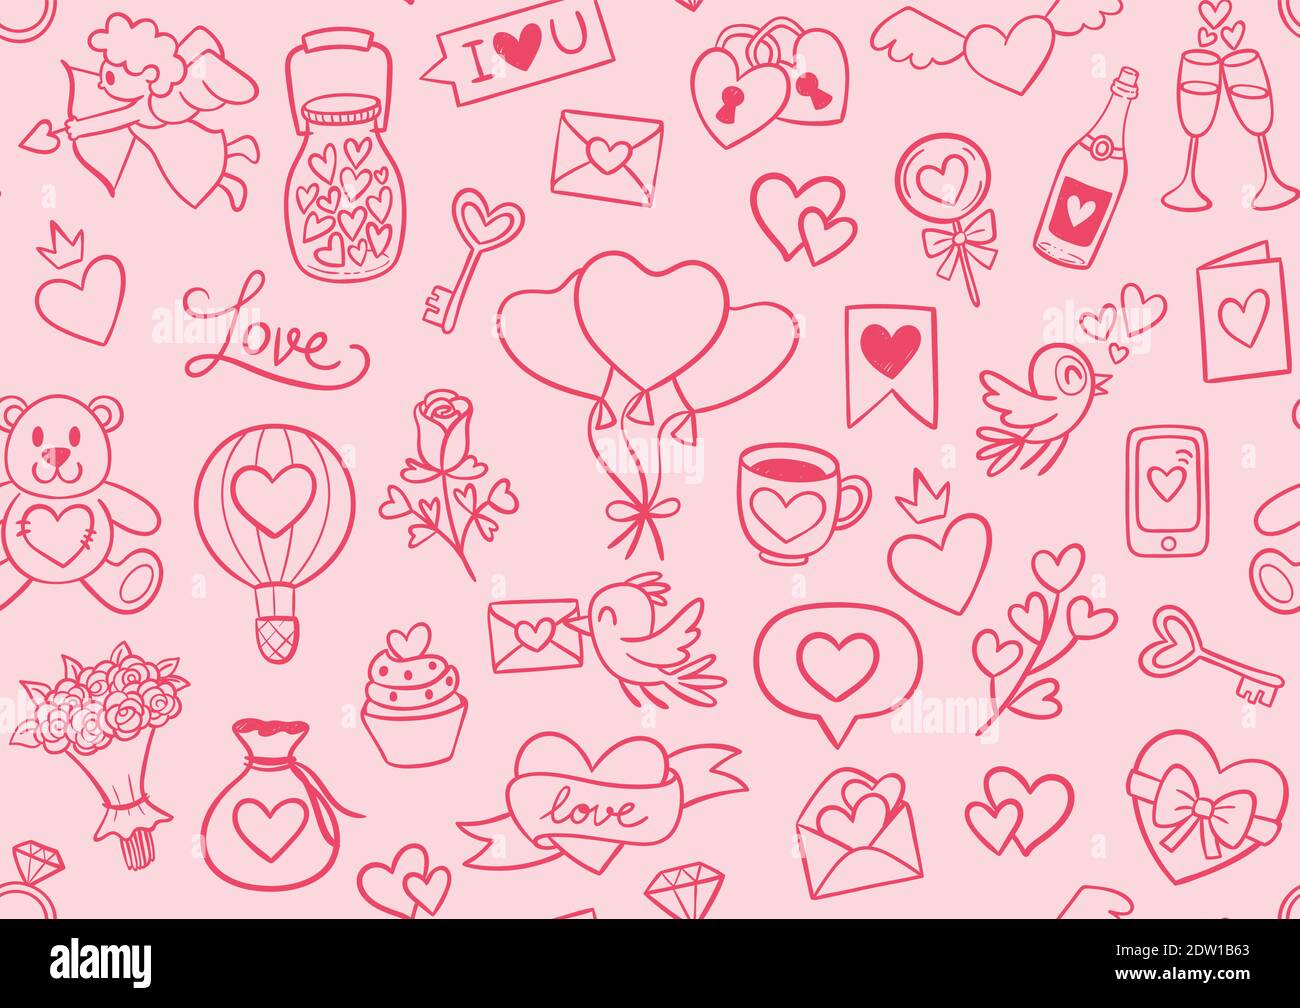 Handgezeichnetes nahtloses Muster zum Valentinstag. Cute Doodle Element Kollektion. Schöne rosa Hintergrund. Vektorgrafik. Stock Vektor